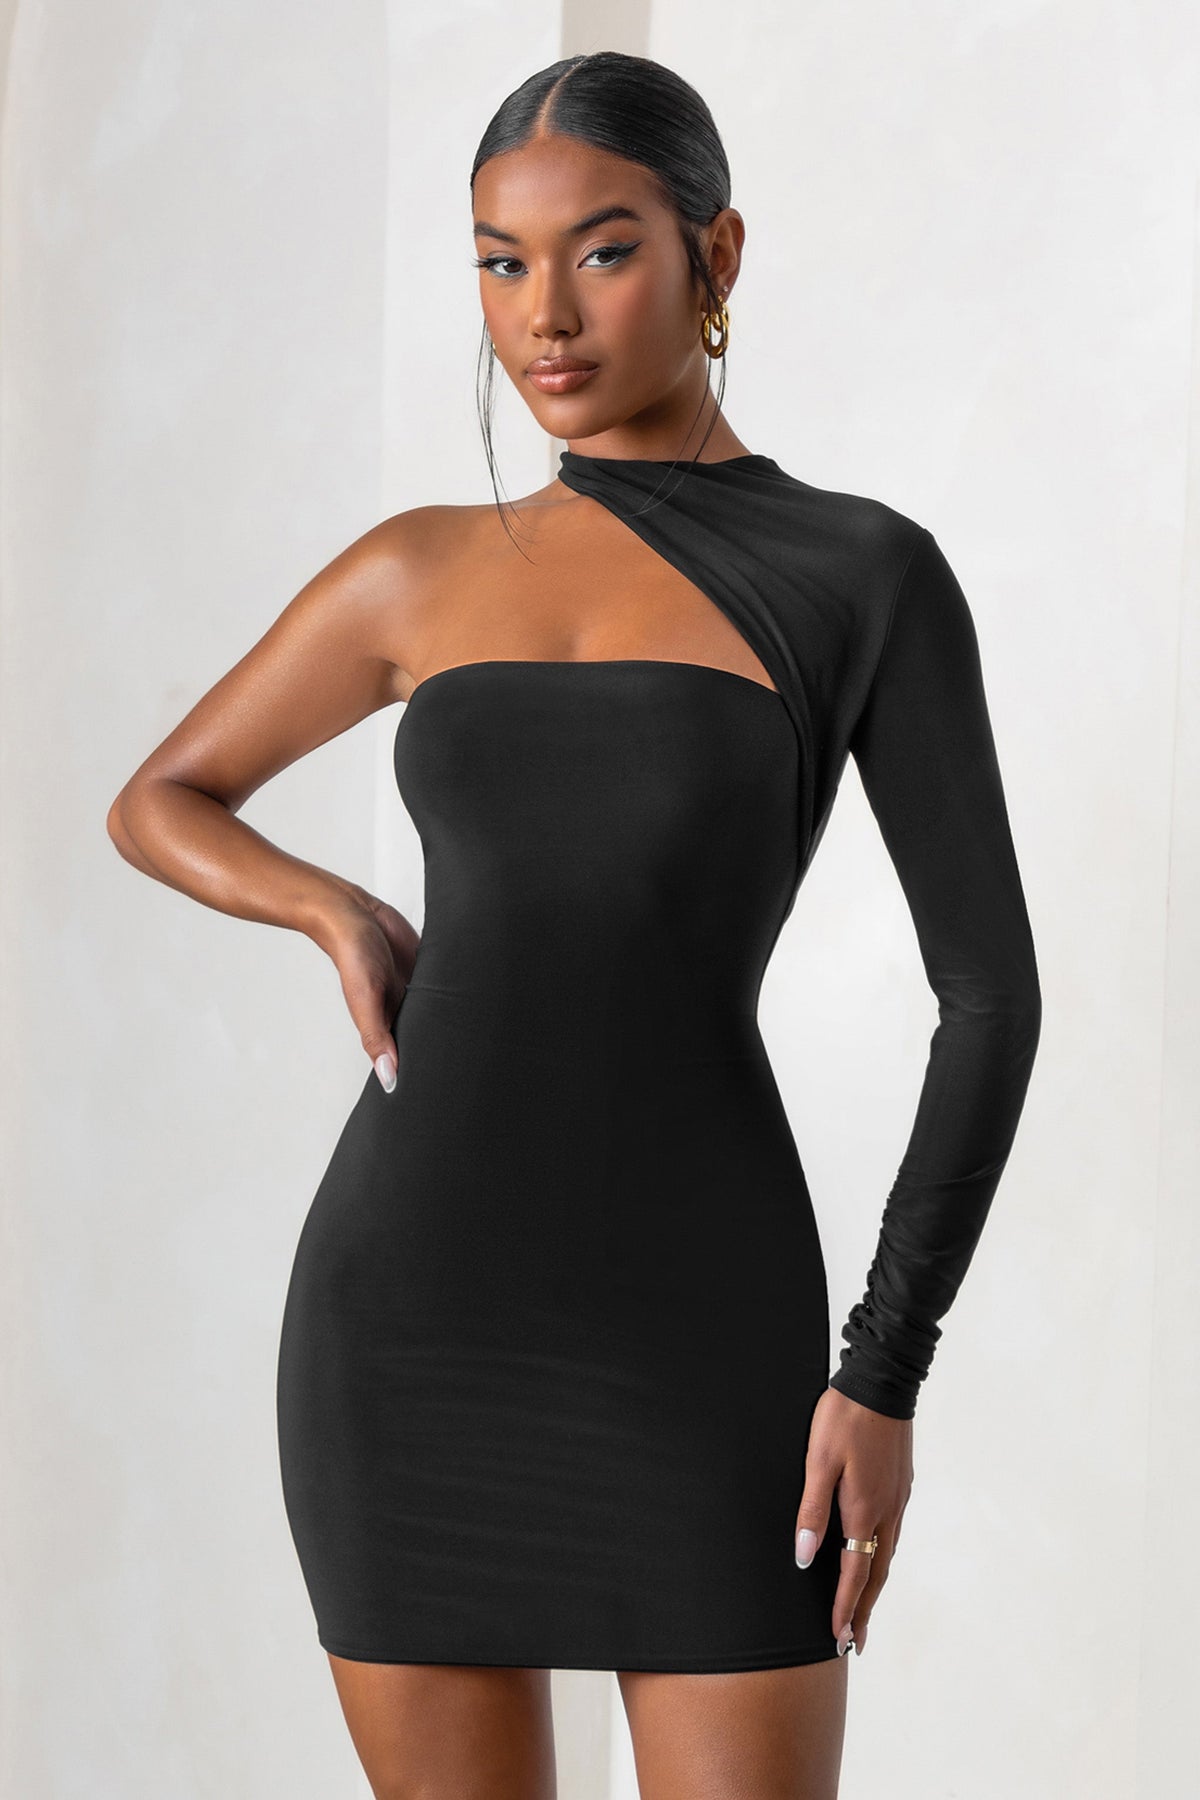 black dress with one shoulder